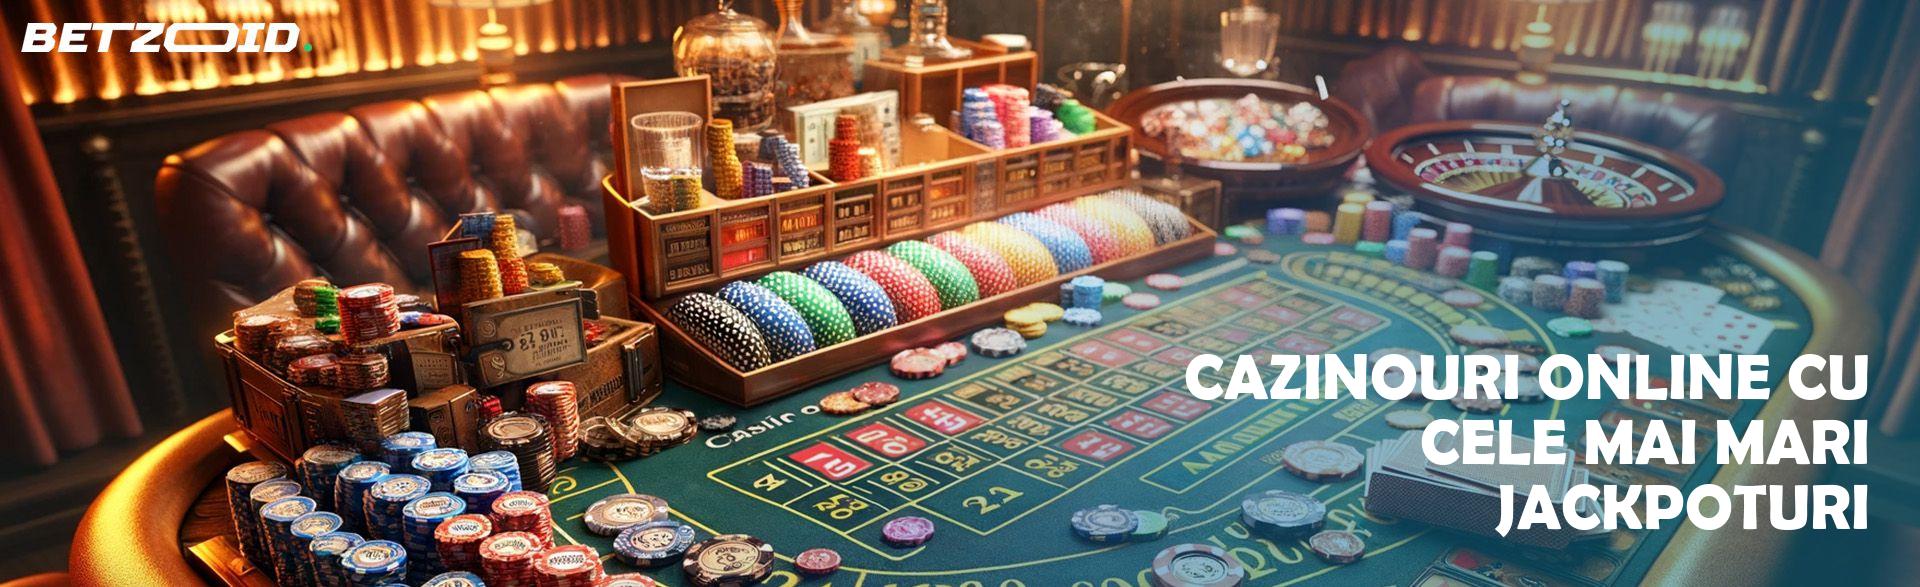 Cazinouri Online Cu Cele Mai Mari Jackpoturi.